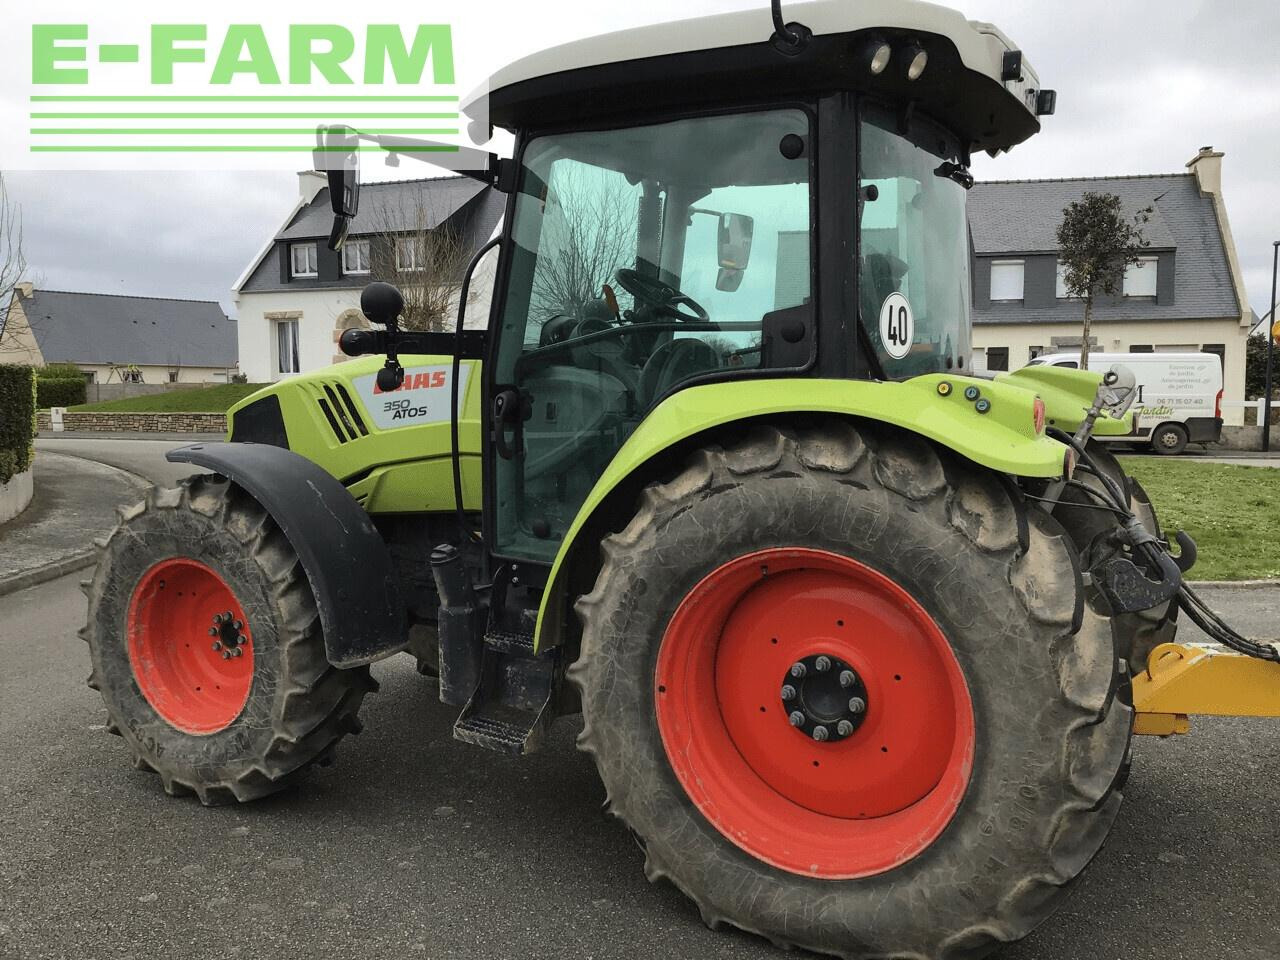 Farm tractor CLAAS atos 350 (a99/500)